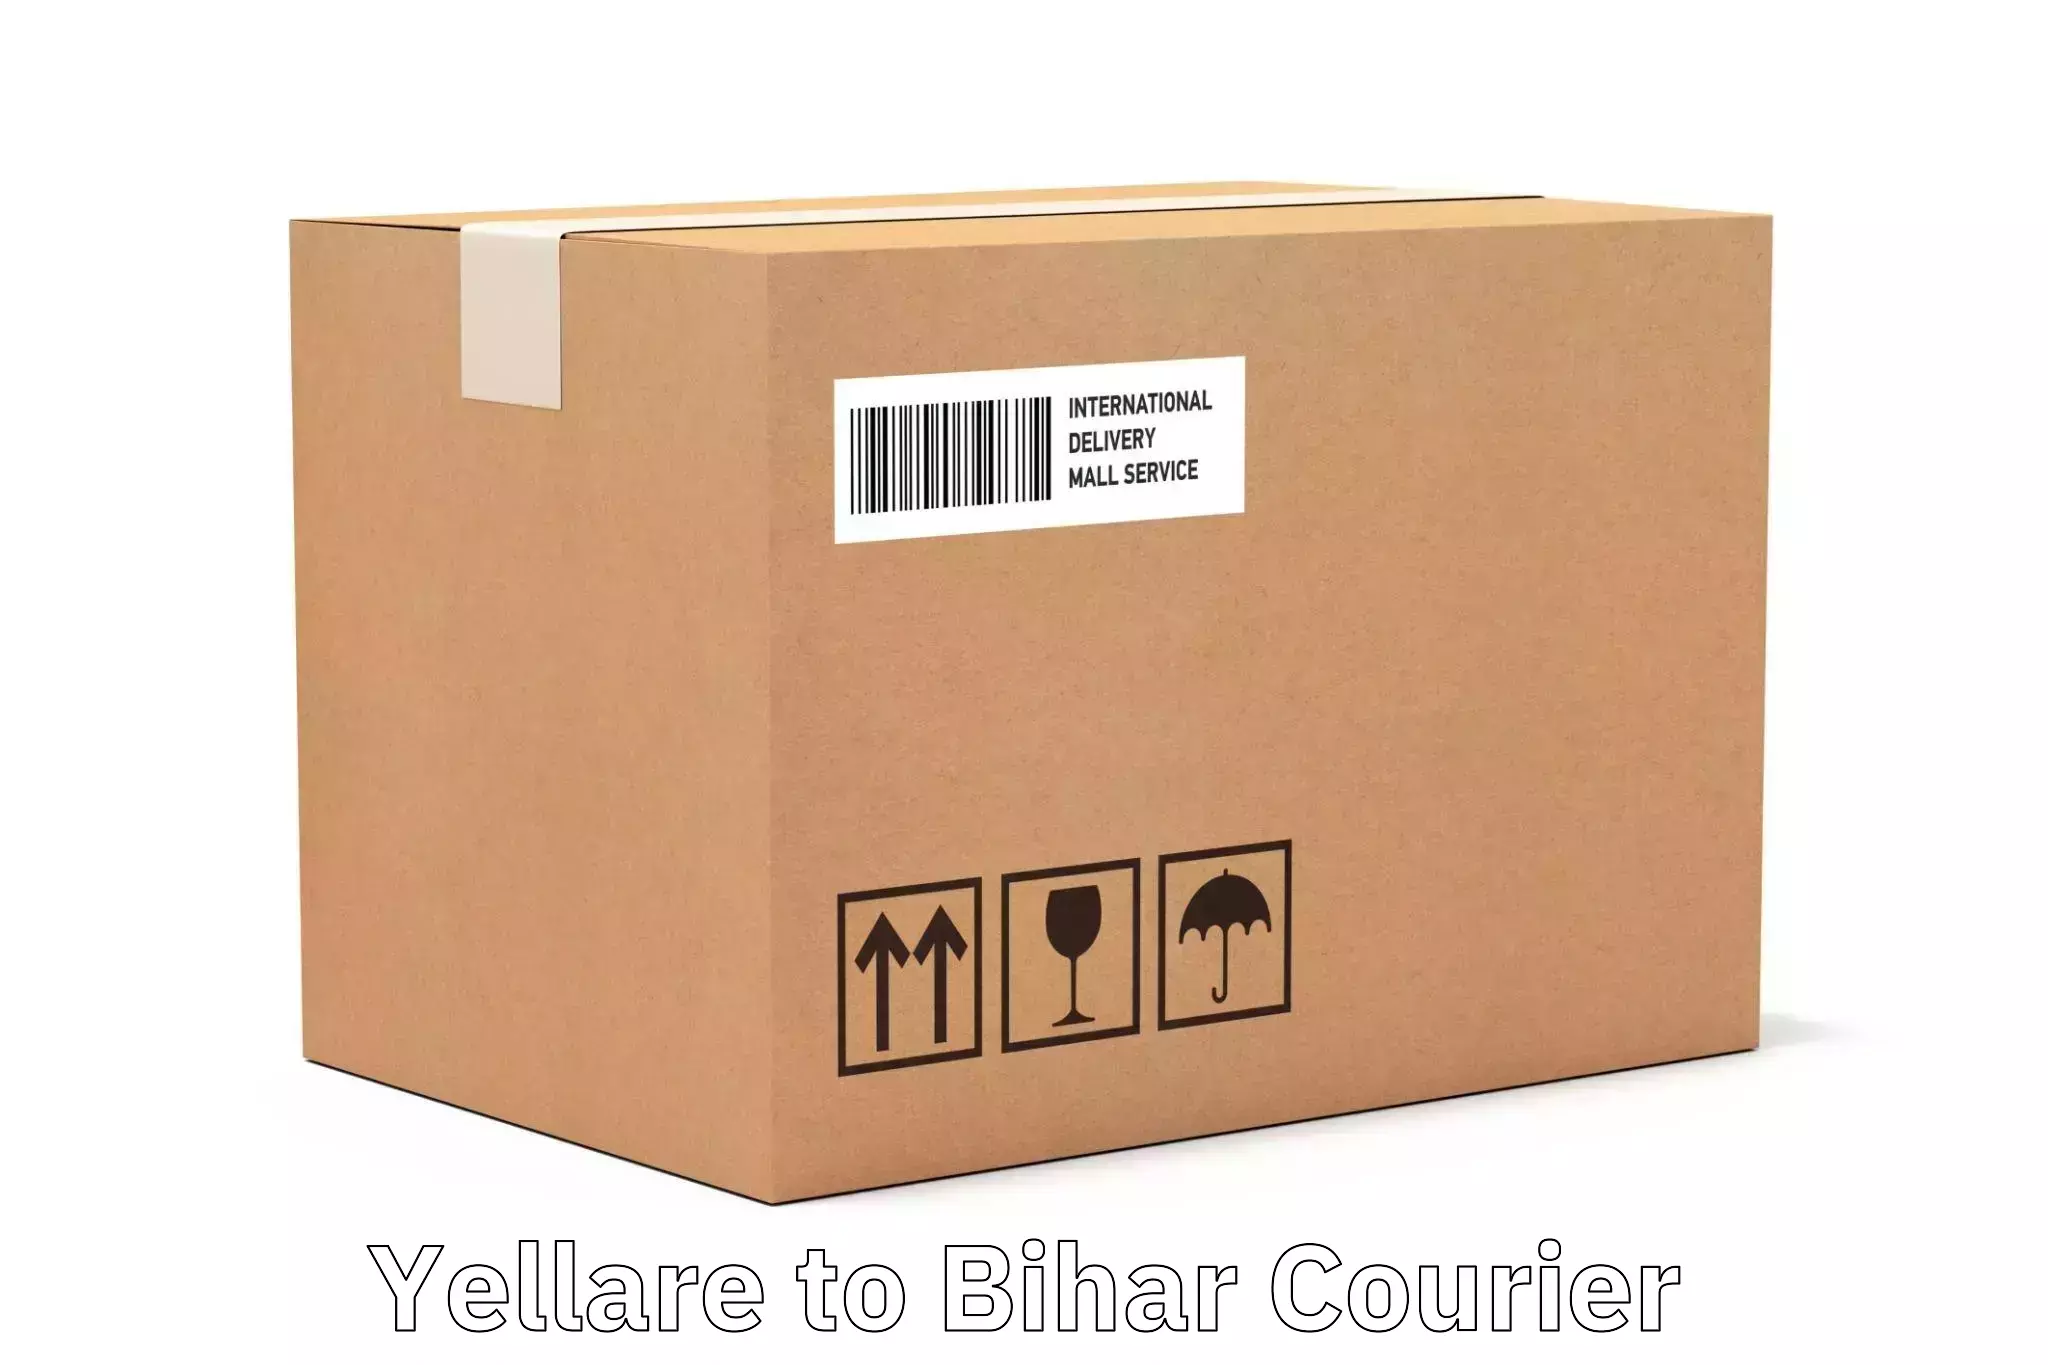 International courier rates Yellare to Lakhisarai